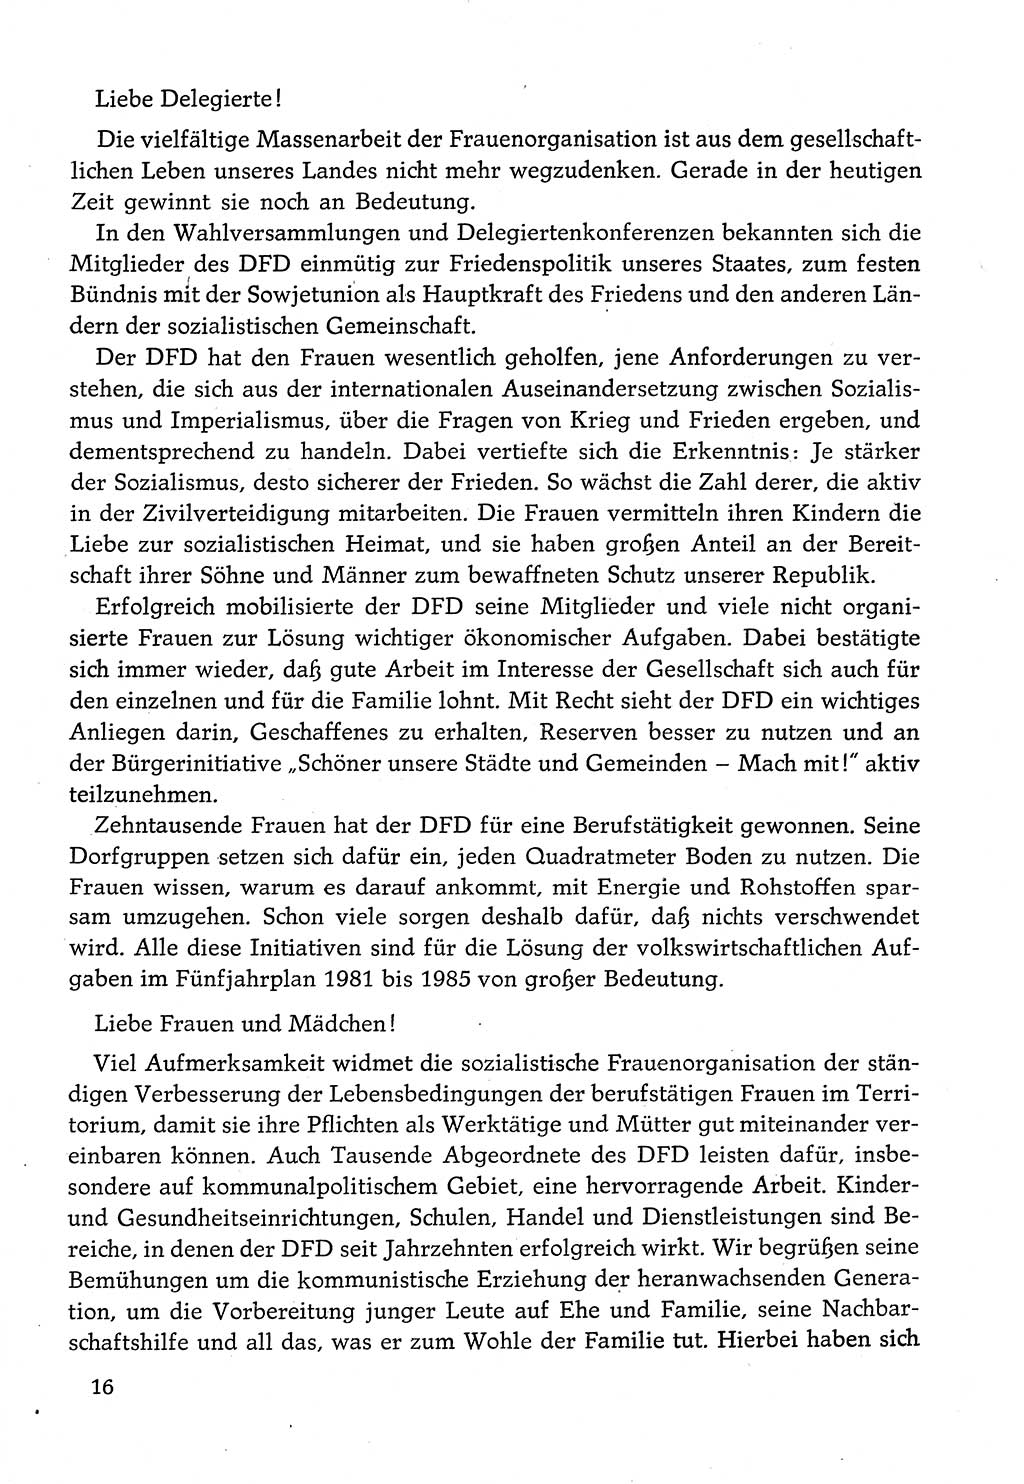 Dokumente der Sozialistischen Einheitspartei Deutschlands (SED) [Deutsche Demokratische Republik (DDR)] 1982-1983, Seite 16 (Dok. SED DDR 1982-1983, S. 16)